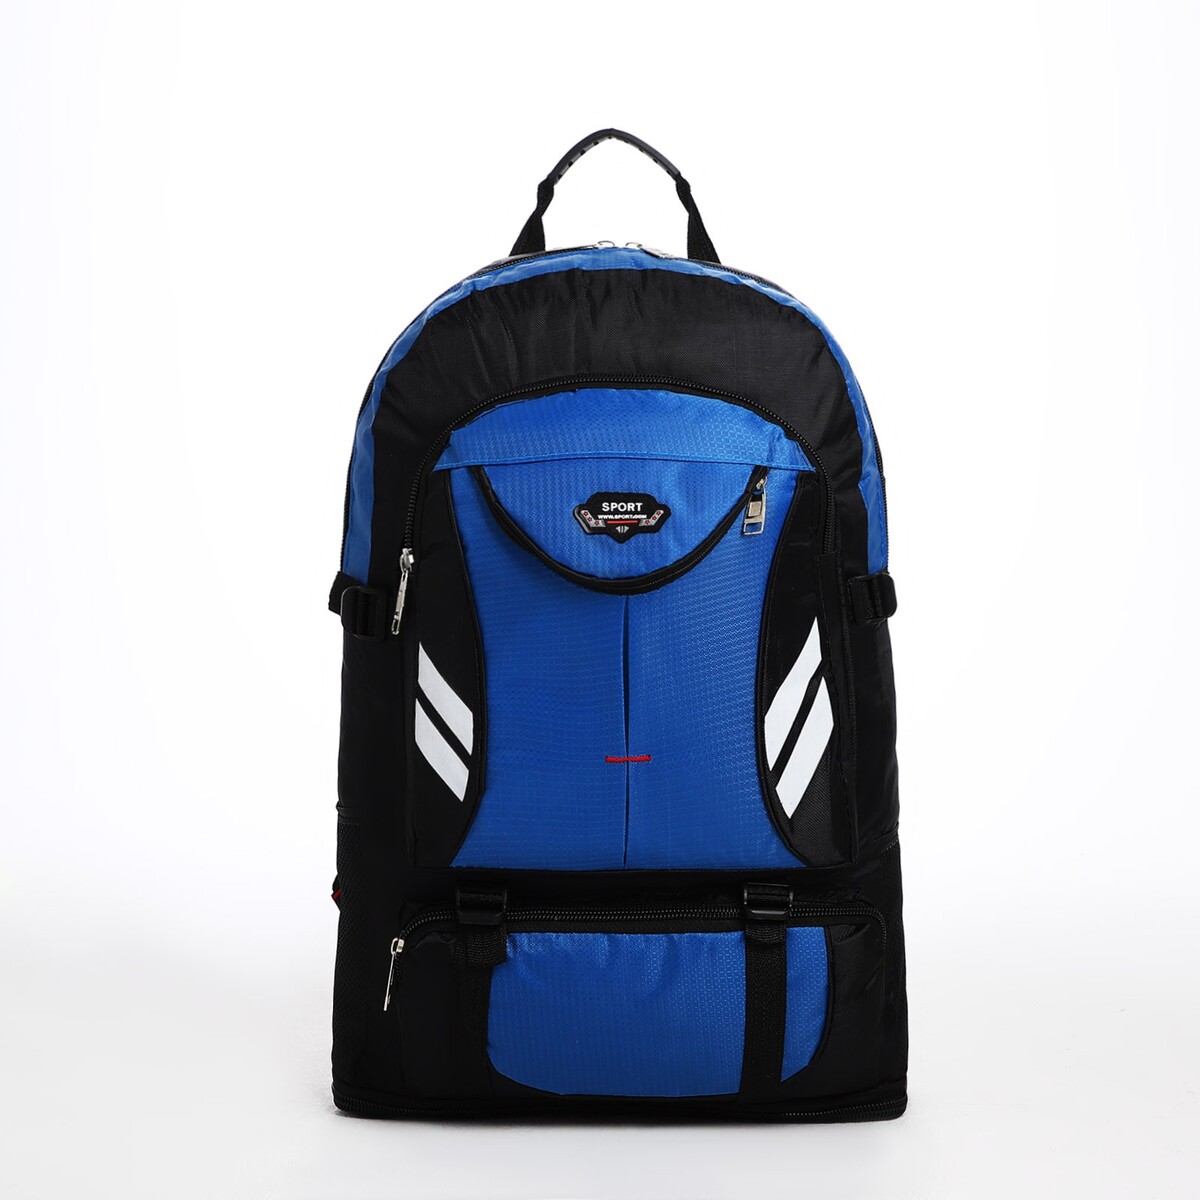 Рюкзак туристический на молнии, 4 наружных кармана, цвет синий/черный рюкзак на молнии с usb 4 наружных кармана сумка пенал синий